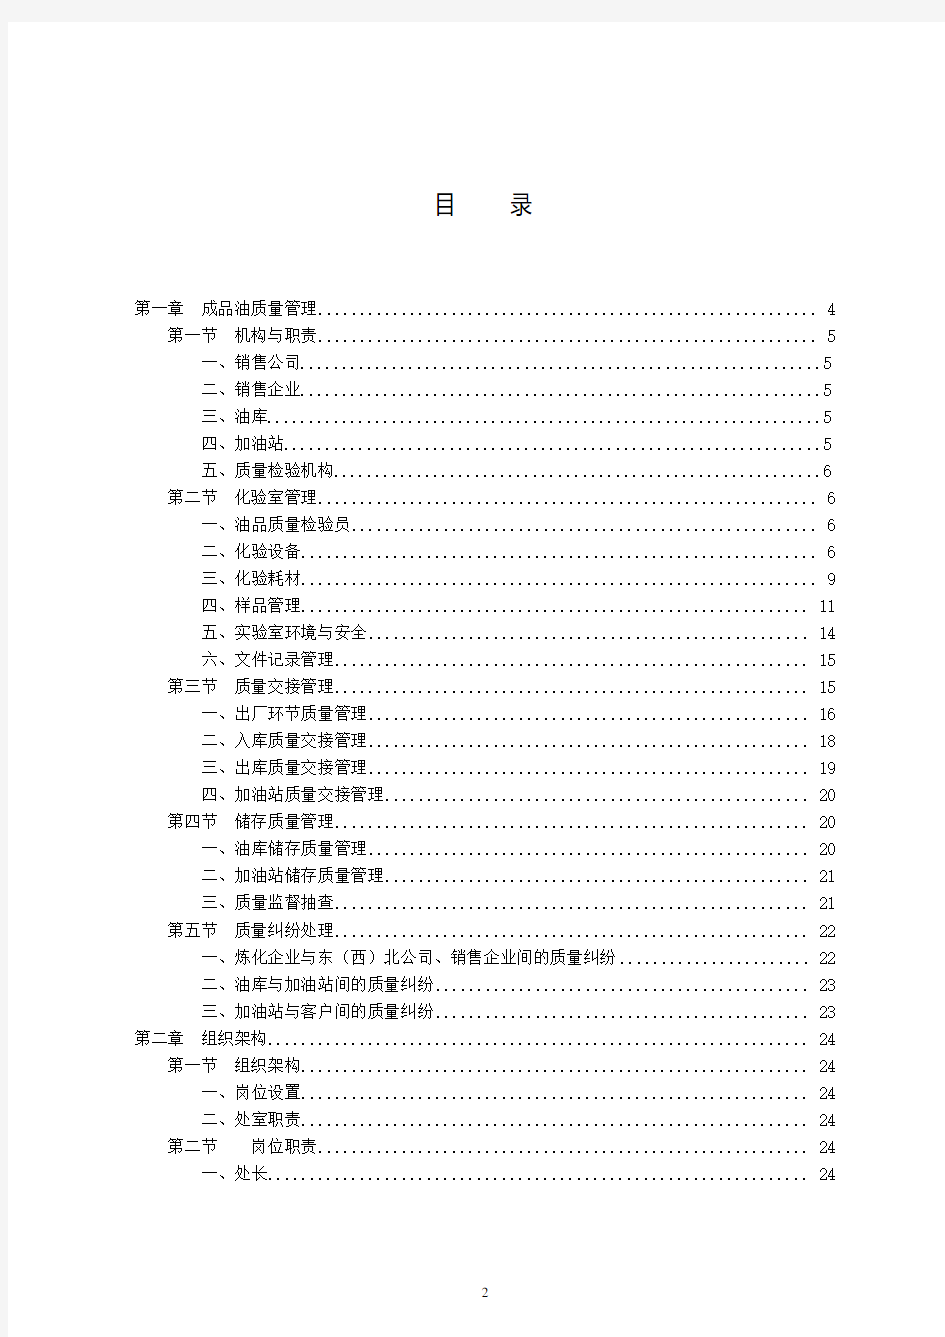 中国石油销售公司管理手册--成品油质量分册(2014版)